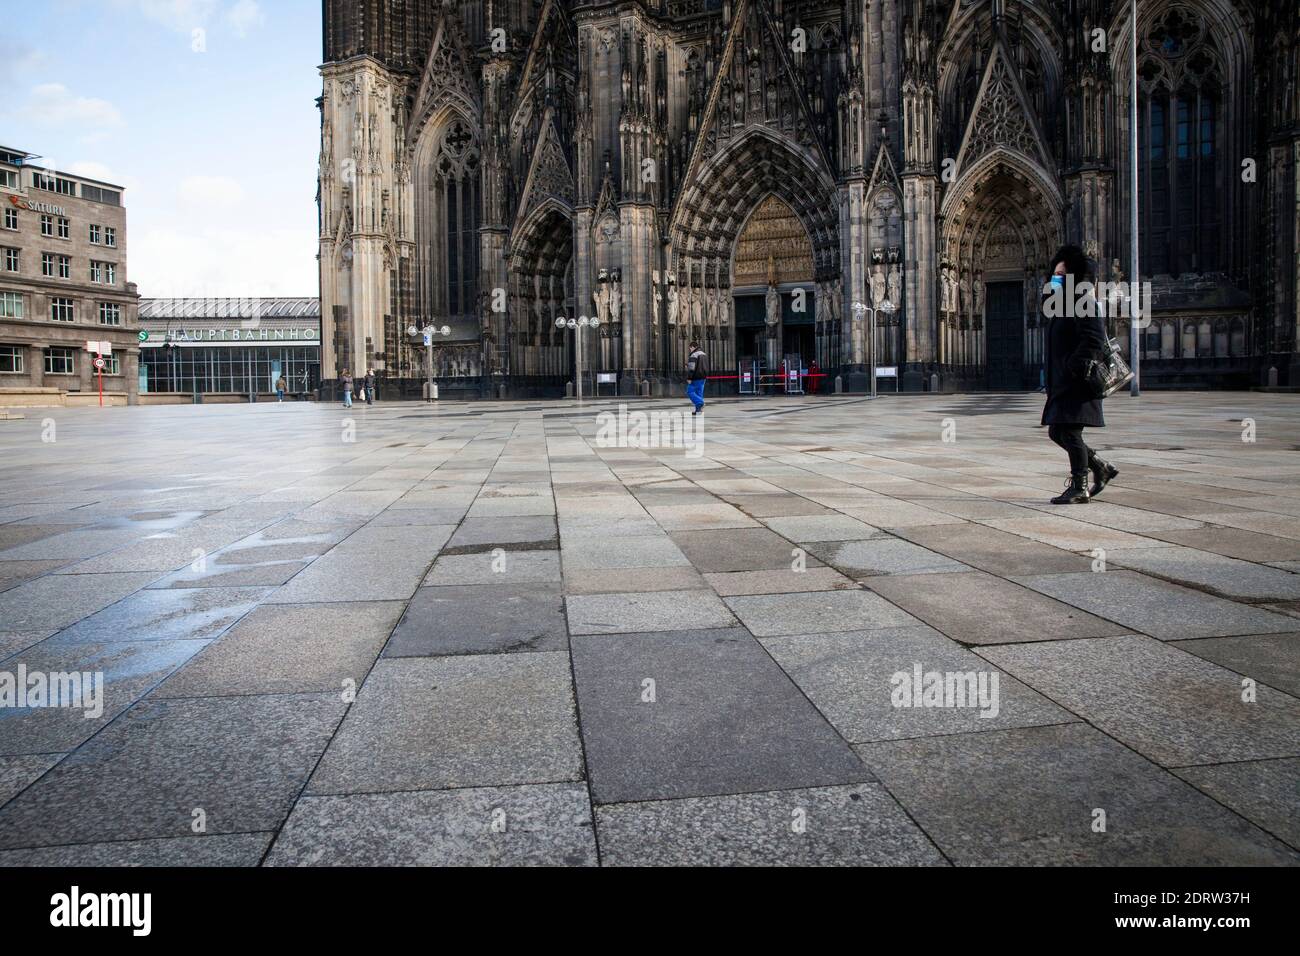 Corona Lockdown, 17 décembre. 2020. La place presque déserte autour de la cathédrale de Cologne, habituellement visité par des milliers de personnes, Cologne, Allemagne. Banque D'Images